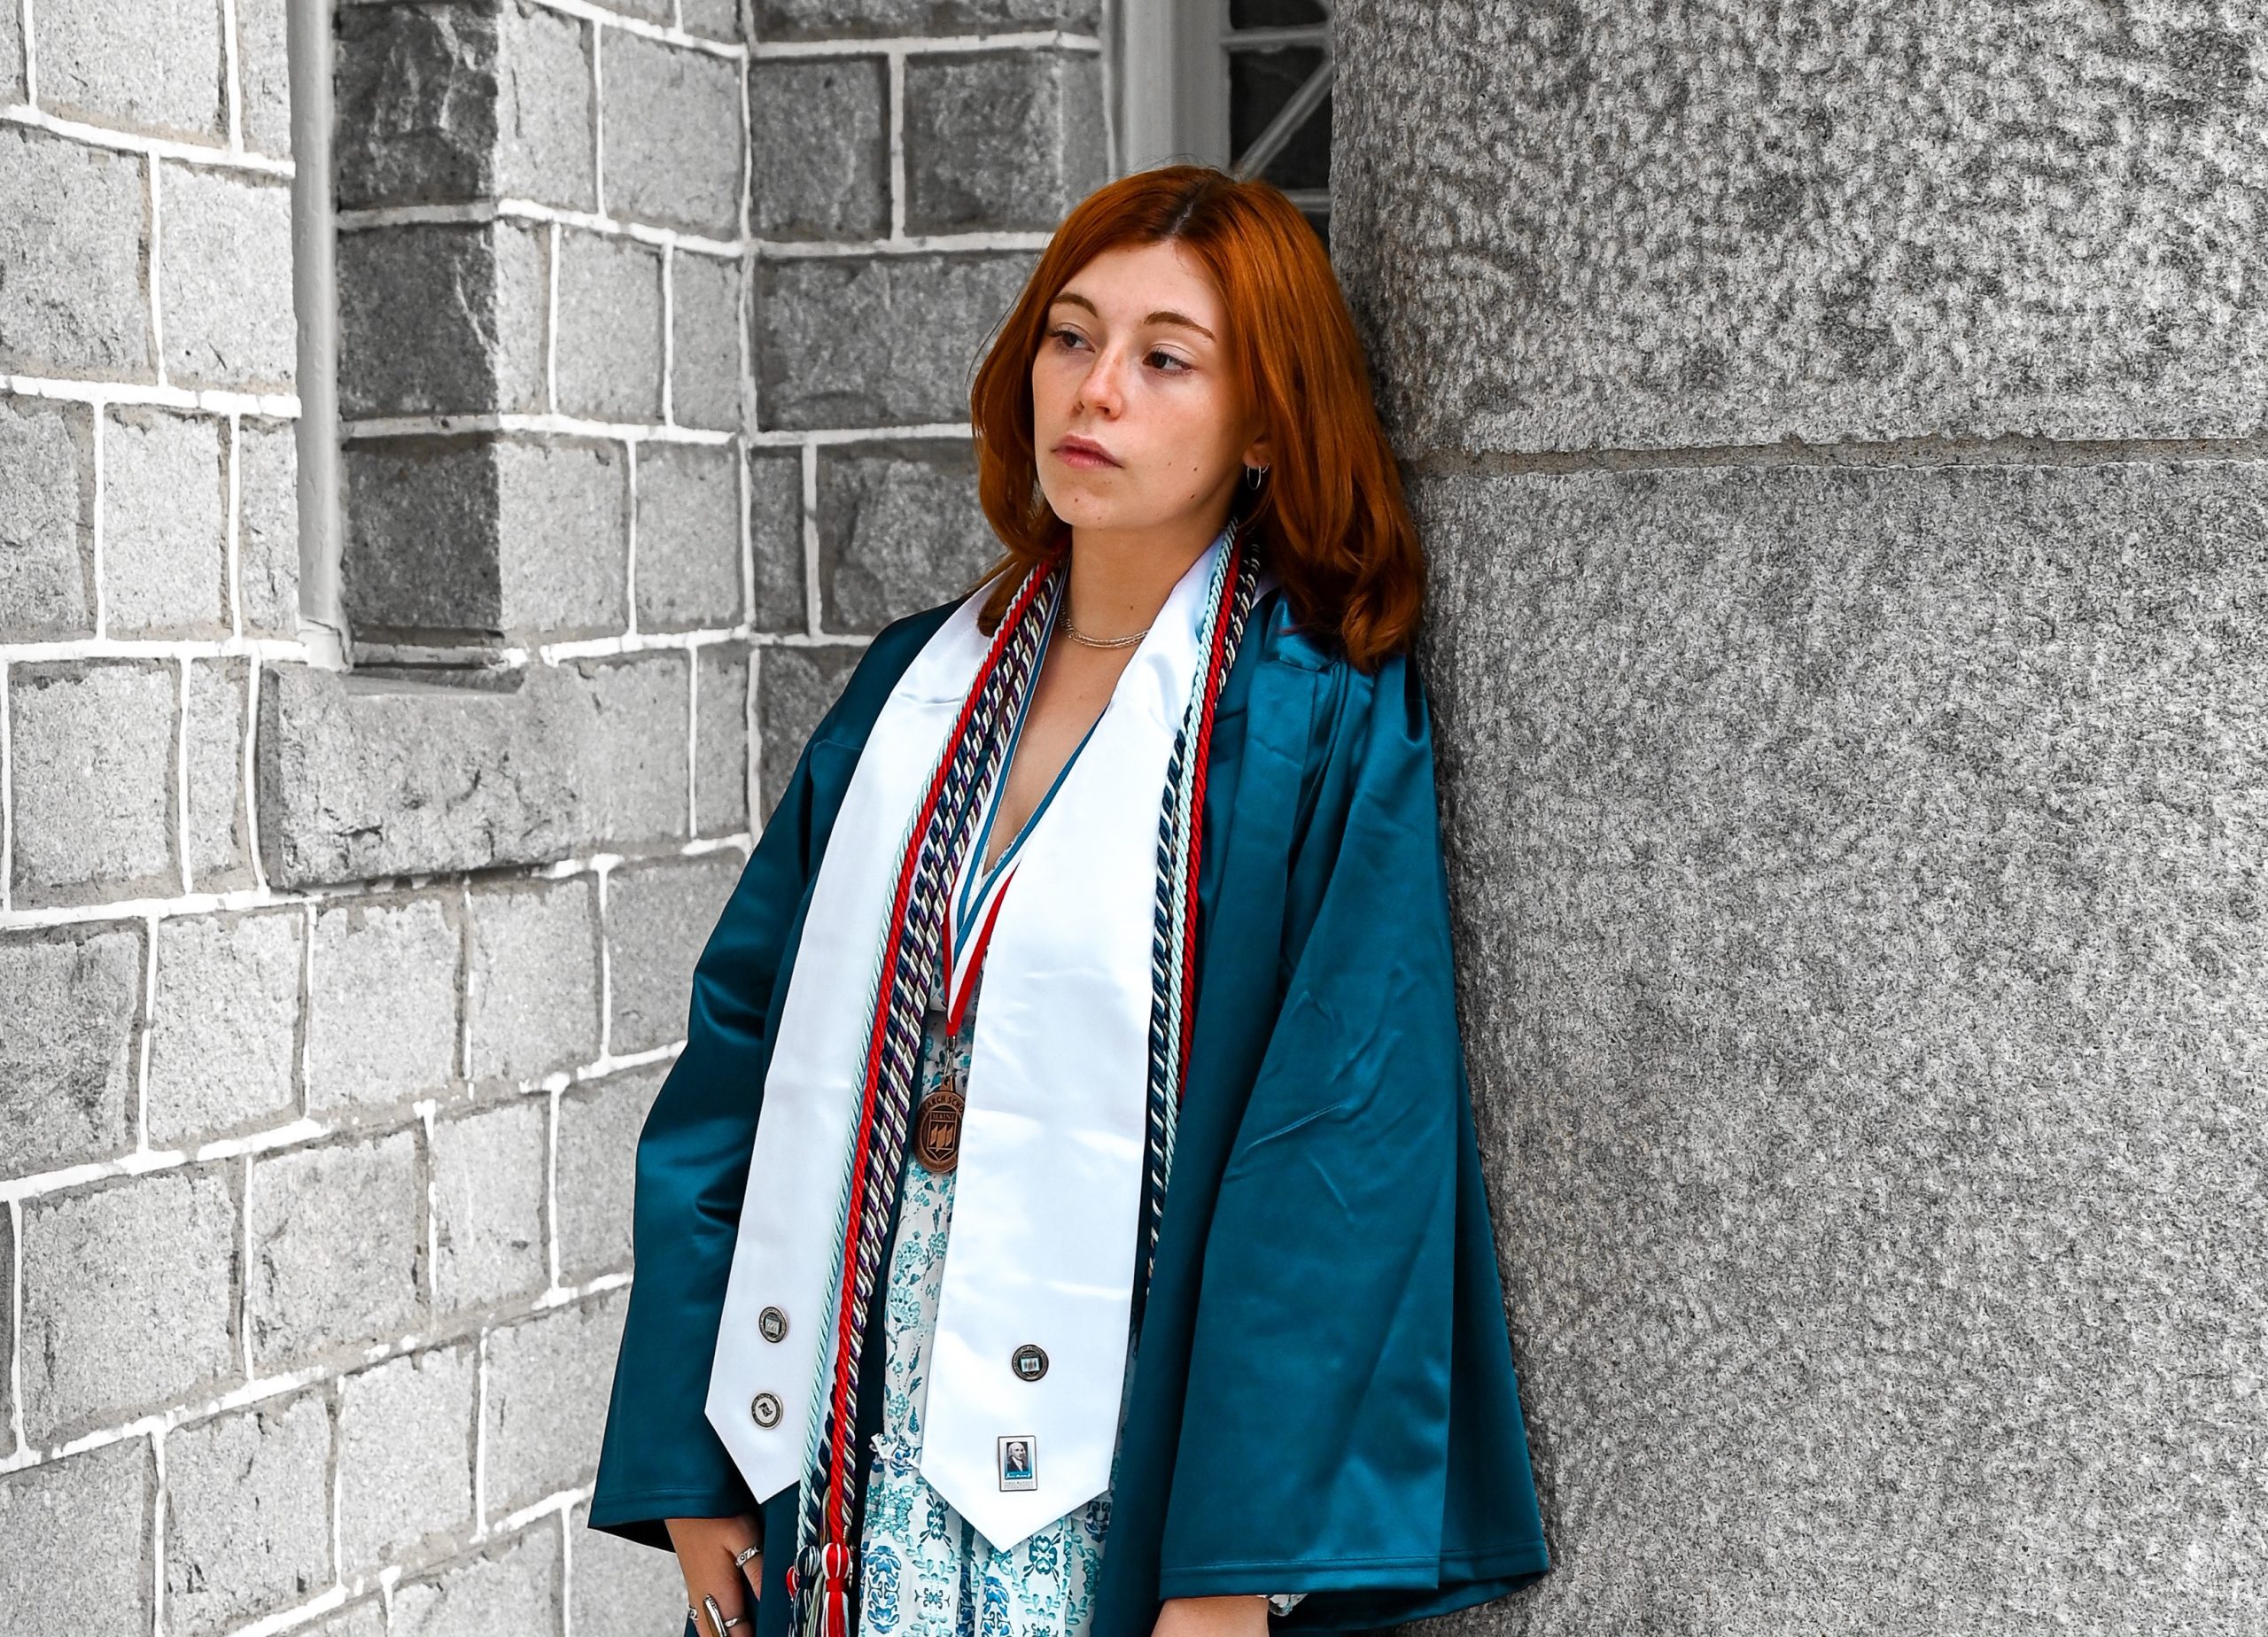 Laura Curioli, in UMaine graduation regalia, leaning against the pillar of a campus building.